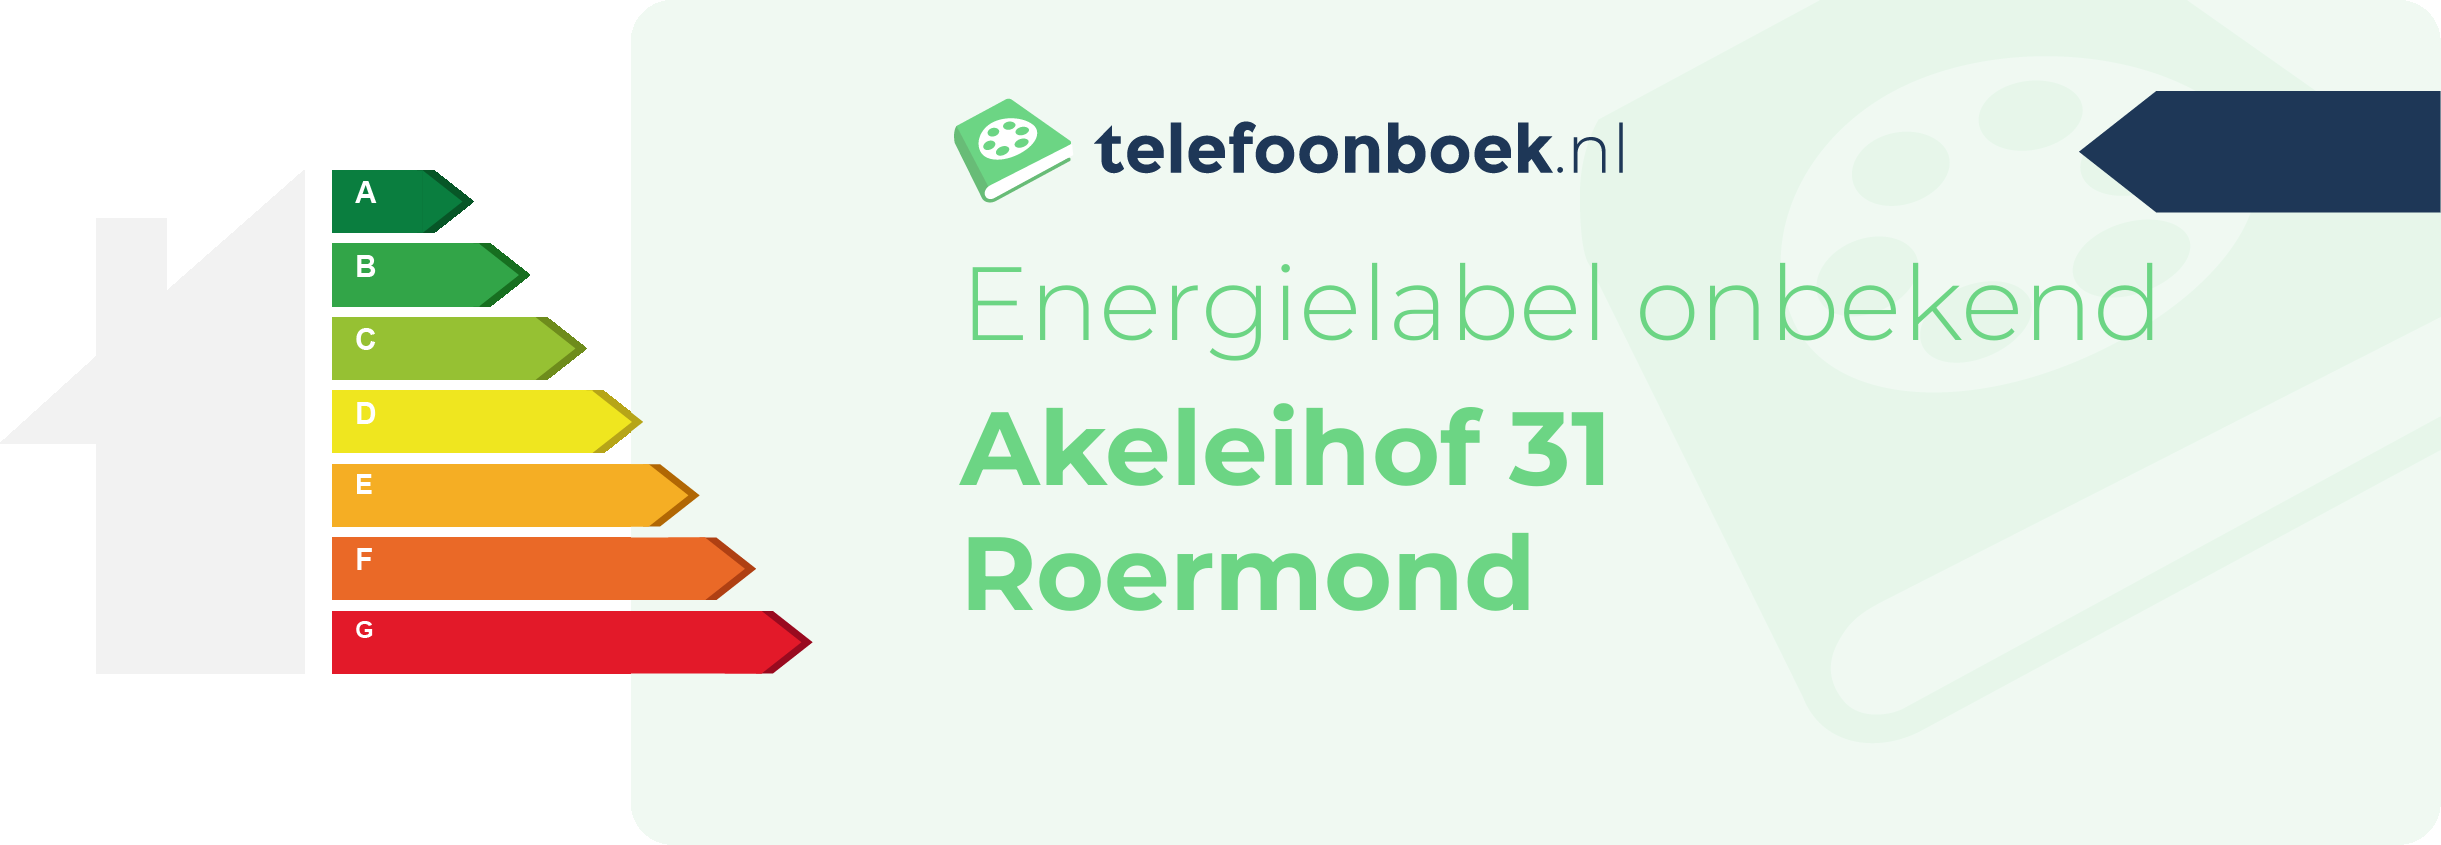 Energielabel Akeleihof 31 Roermond